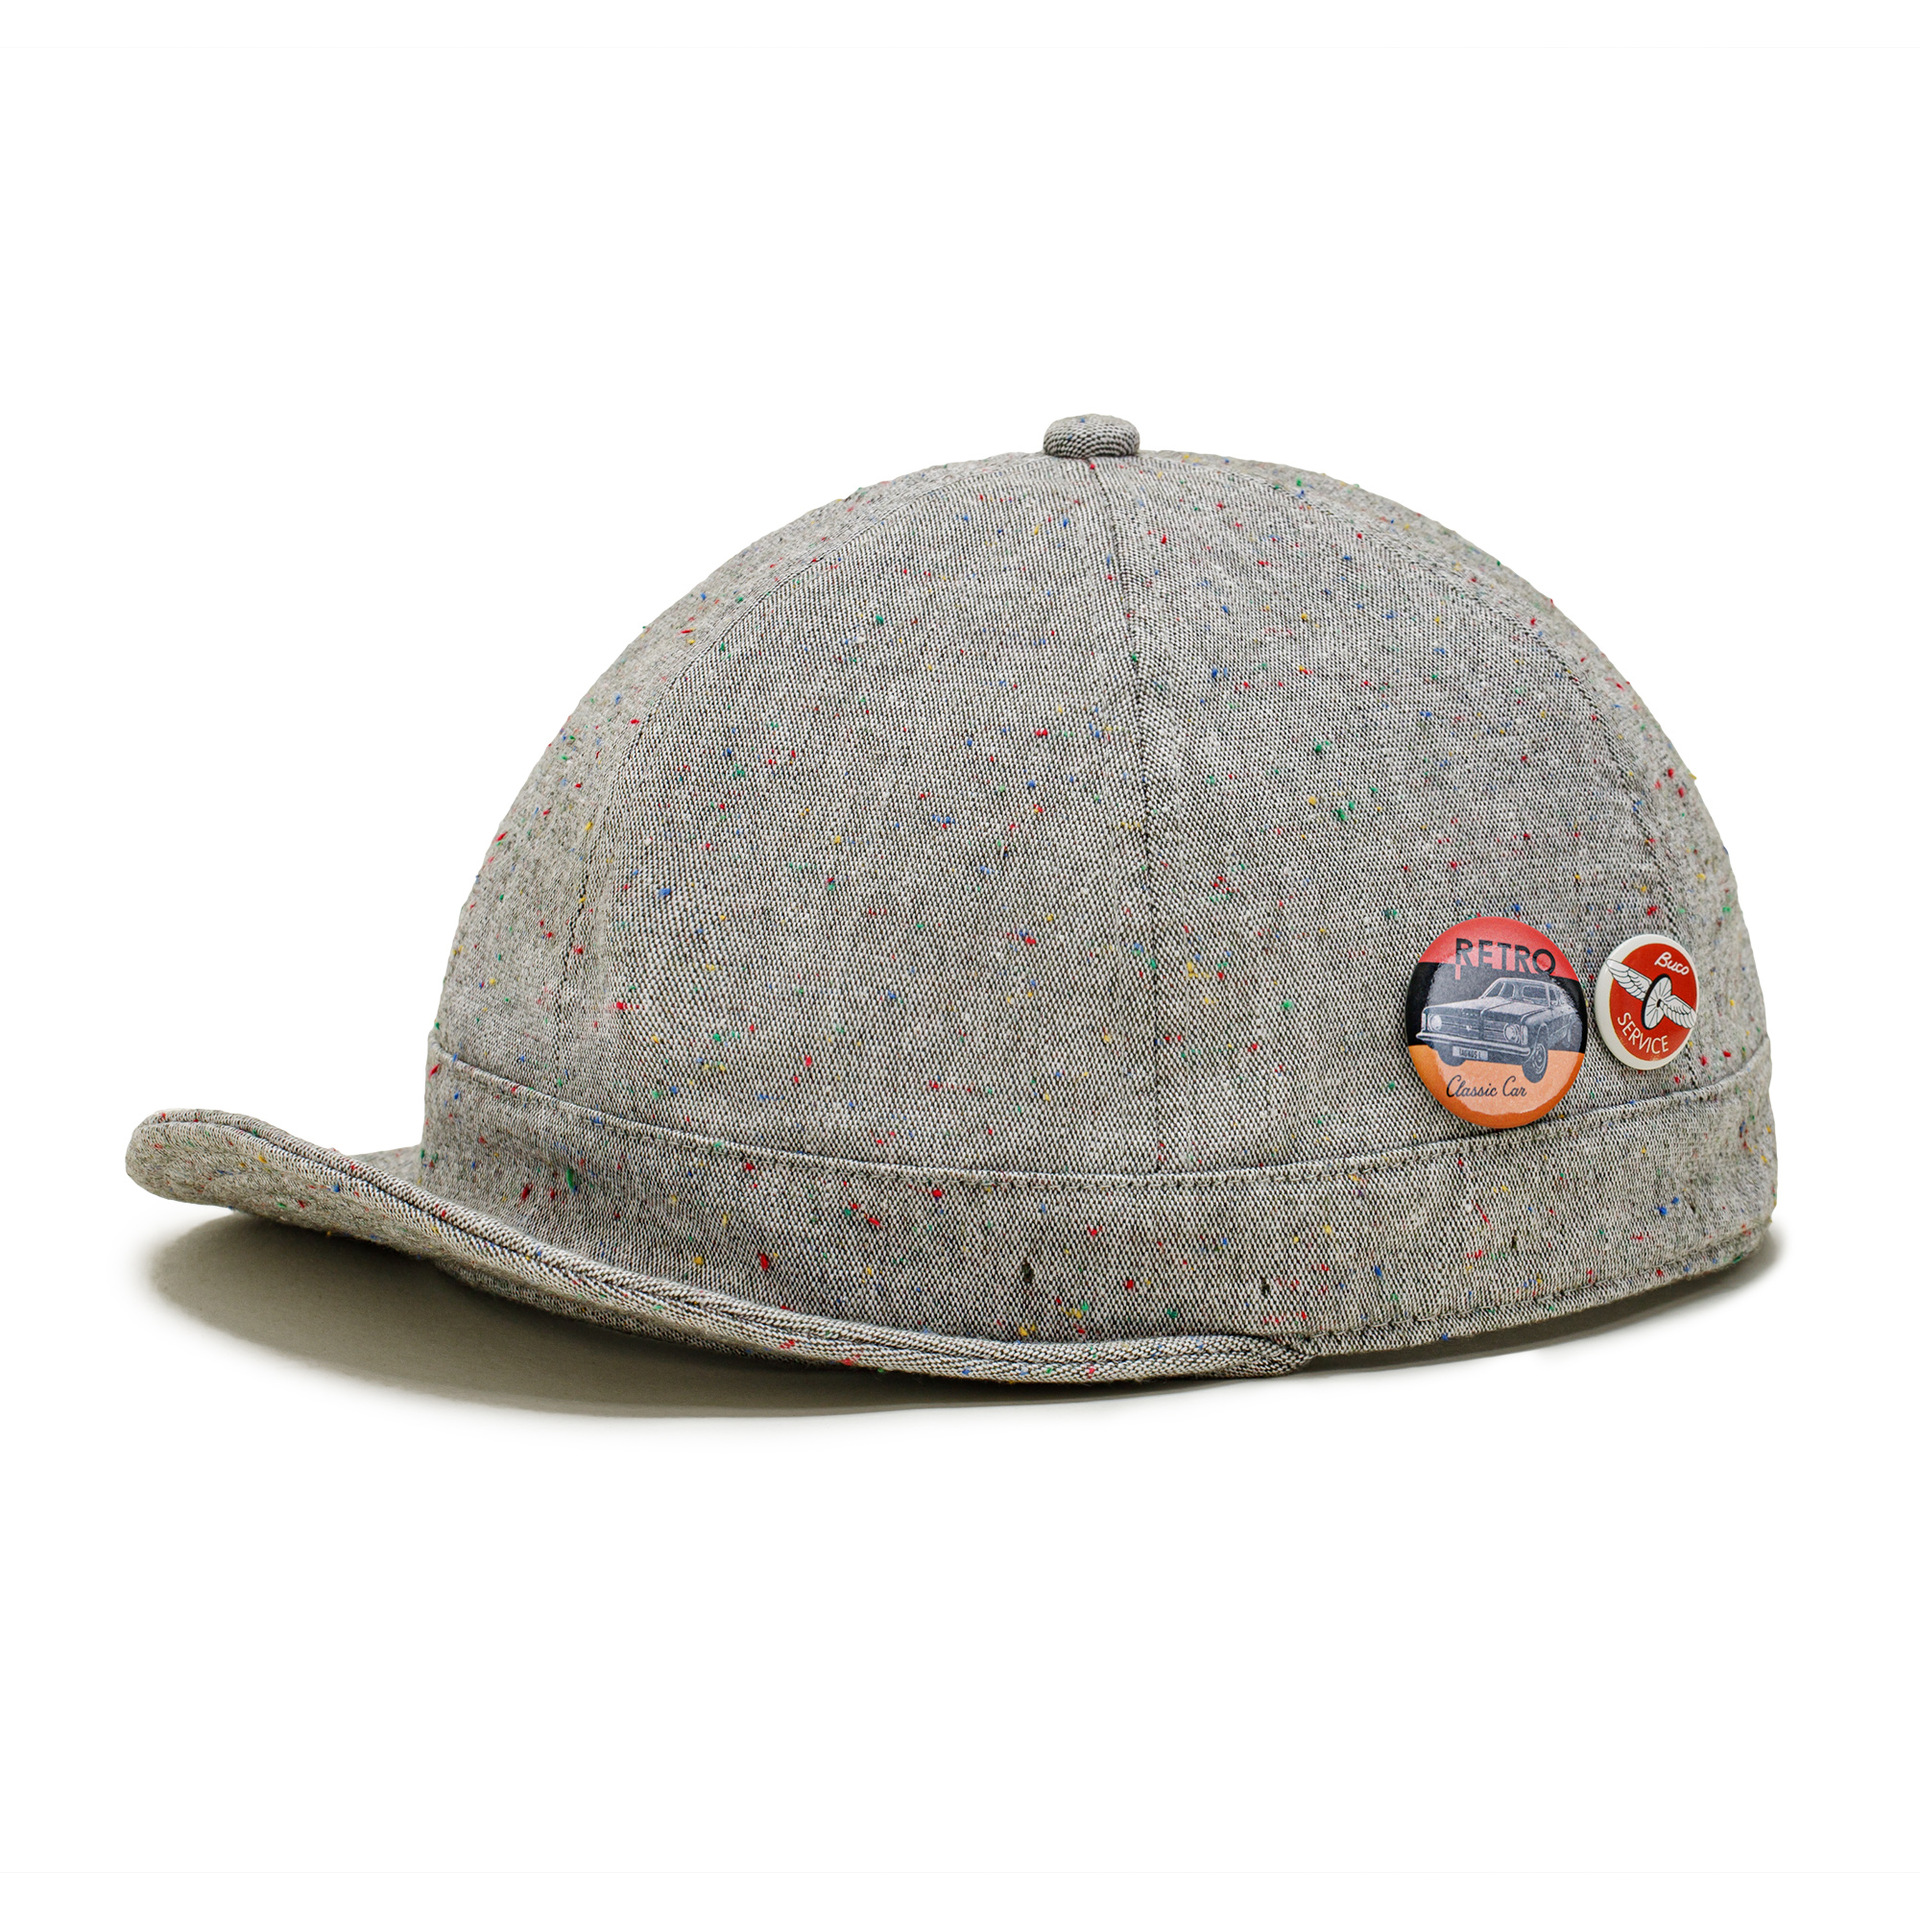 MADEN Vintage Blended Dot Yarn Short-Brimmed Hat Dome Distressed Gray Peaked Cap